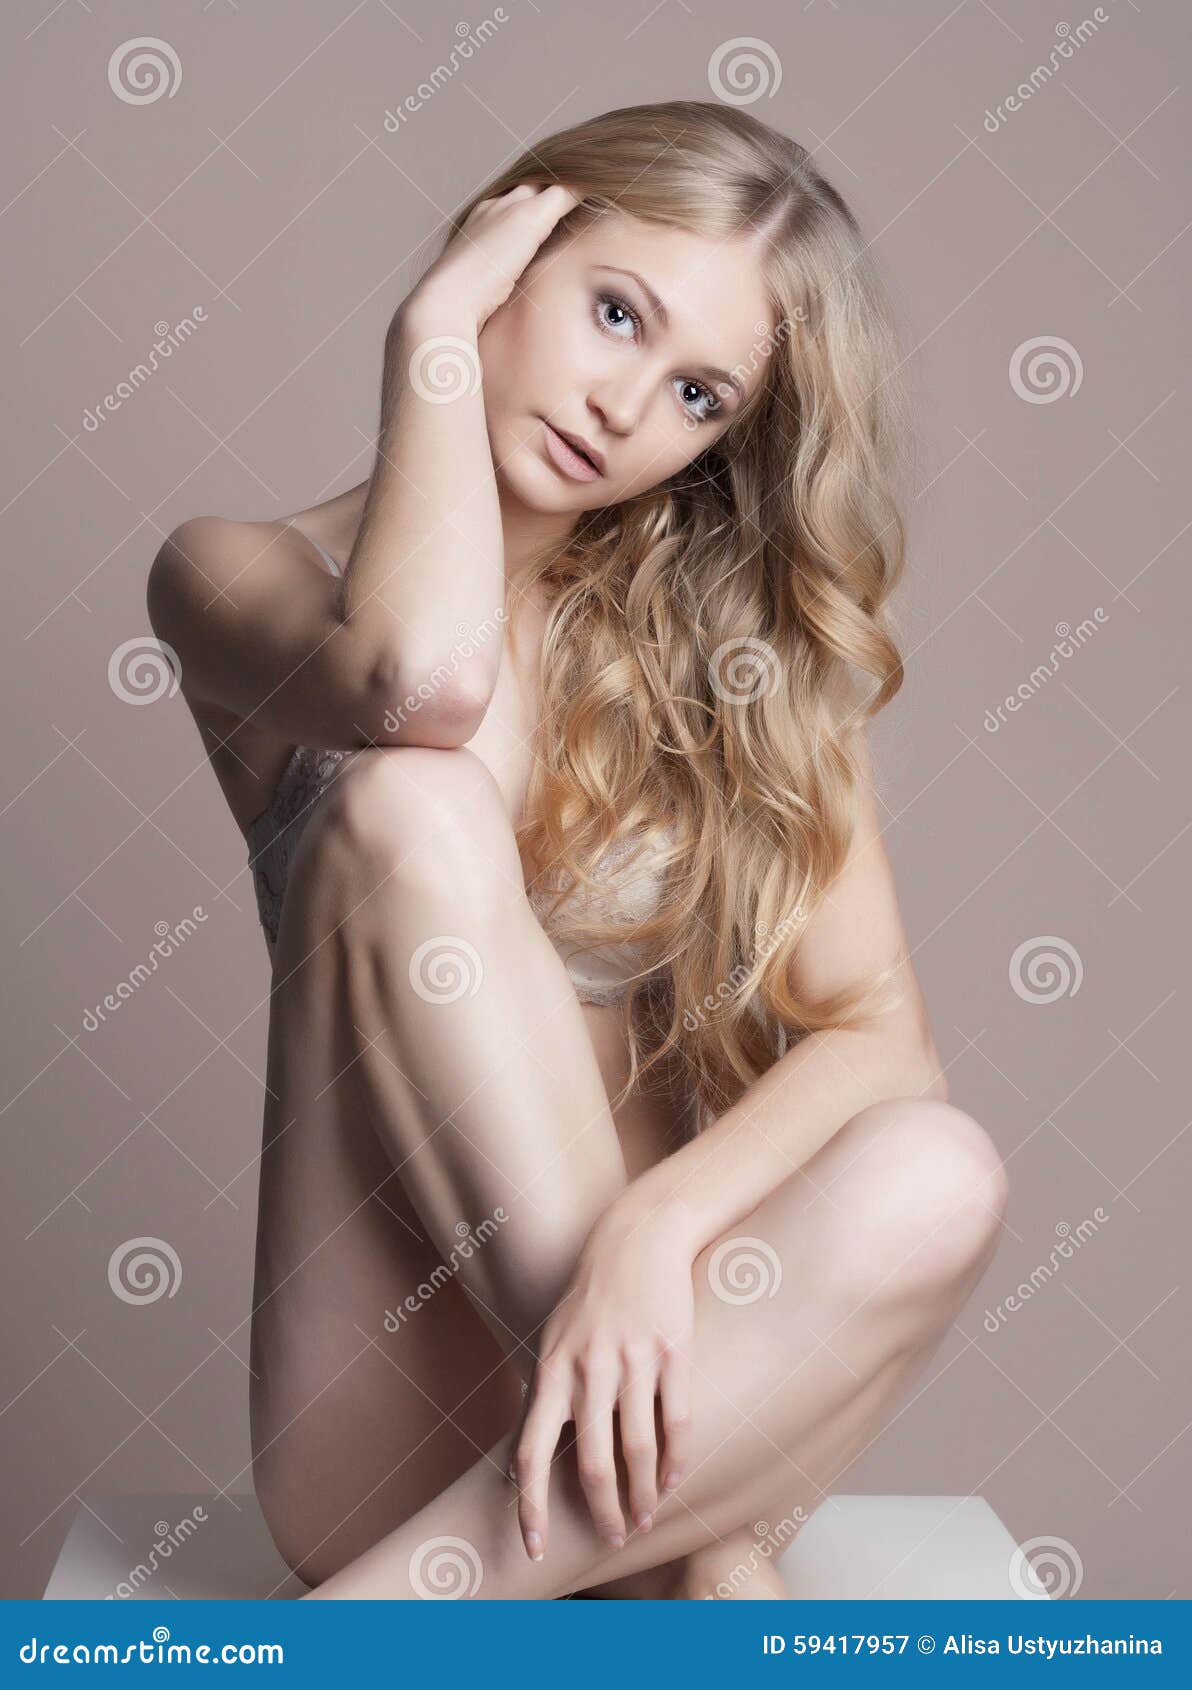 al bentulan add nude hot young women photo